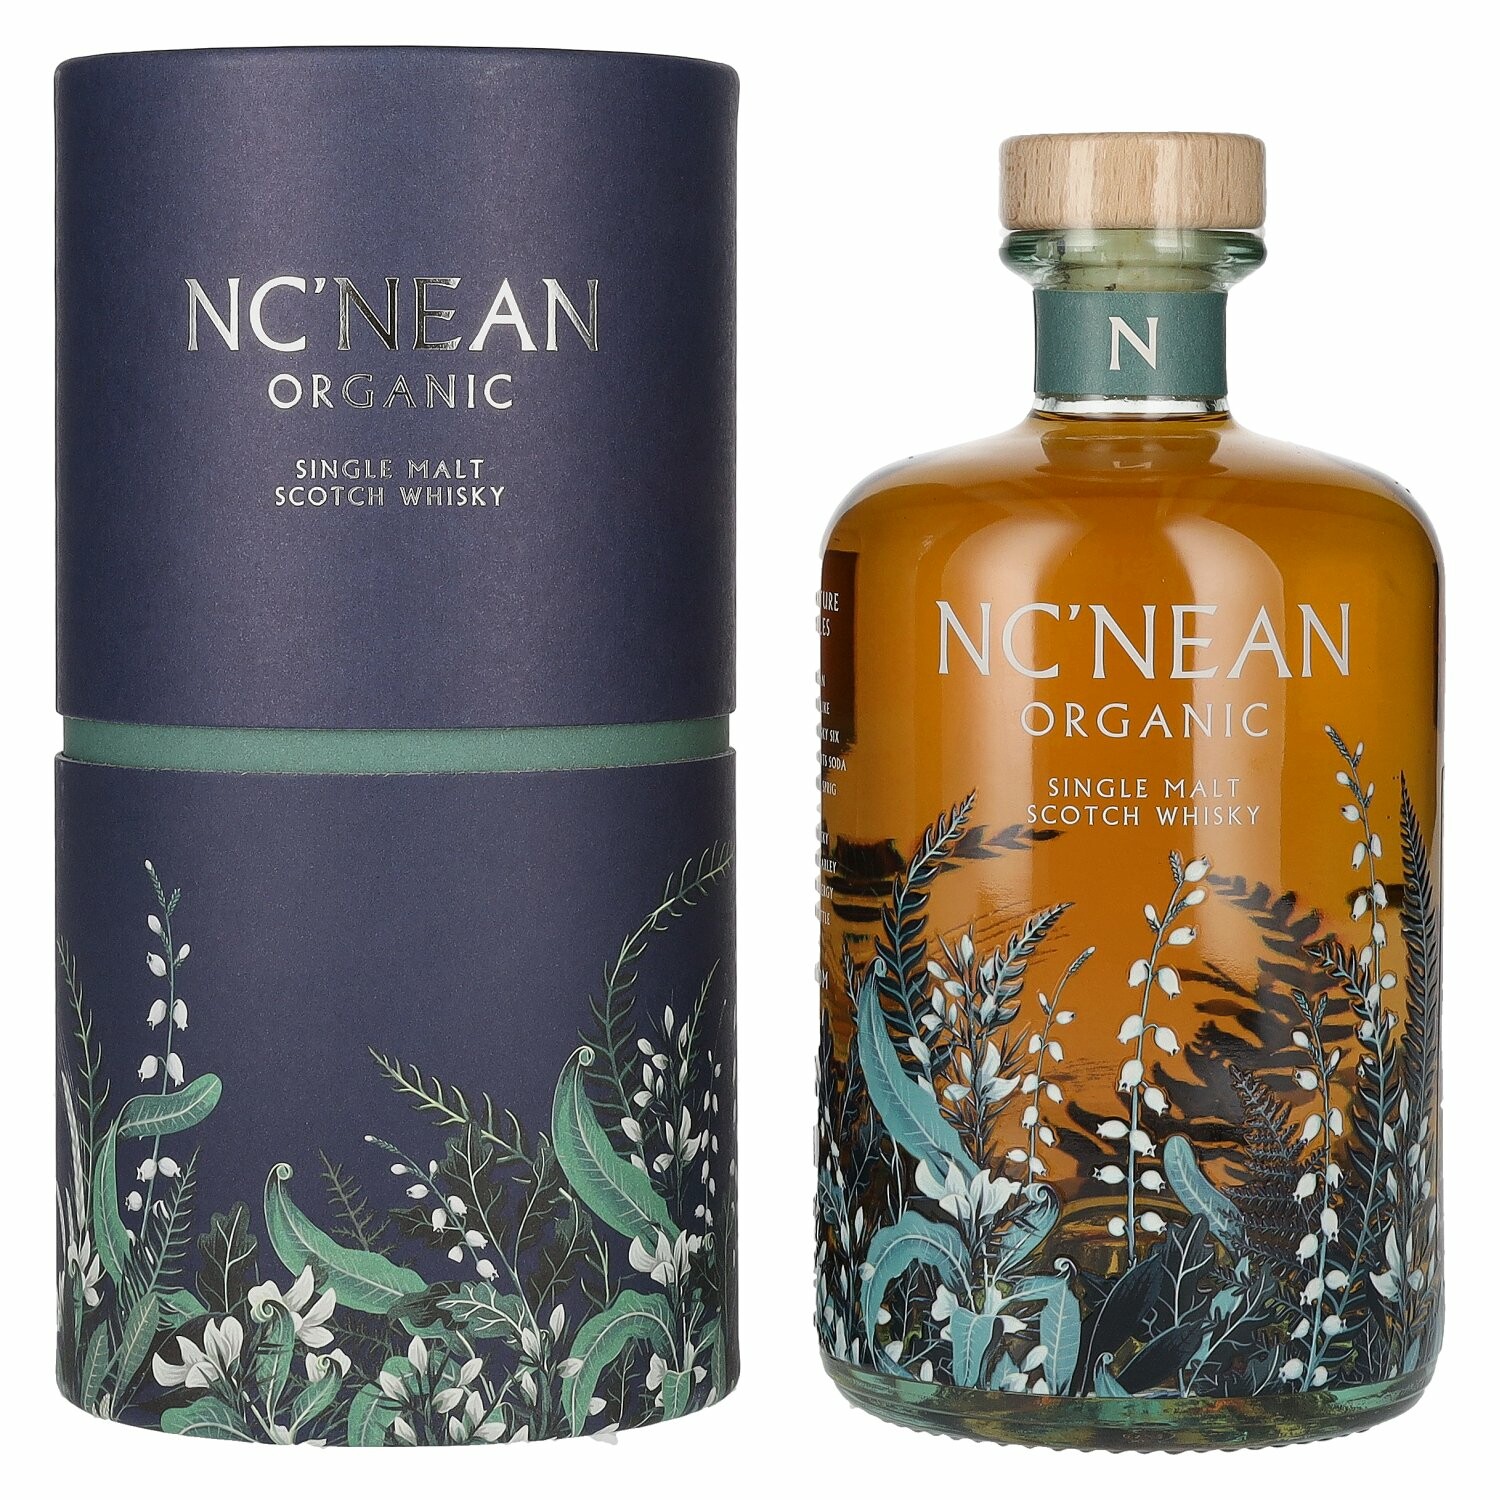 Nc’nean ORGANIC Single Malt Scotch Whisky Batch 15 46% Vol. 0,7l in Giftbox